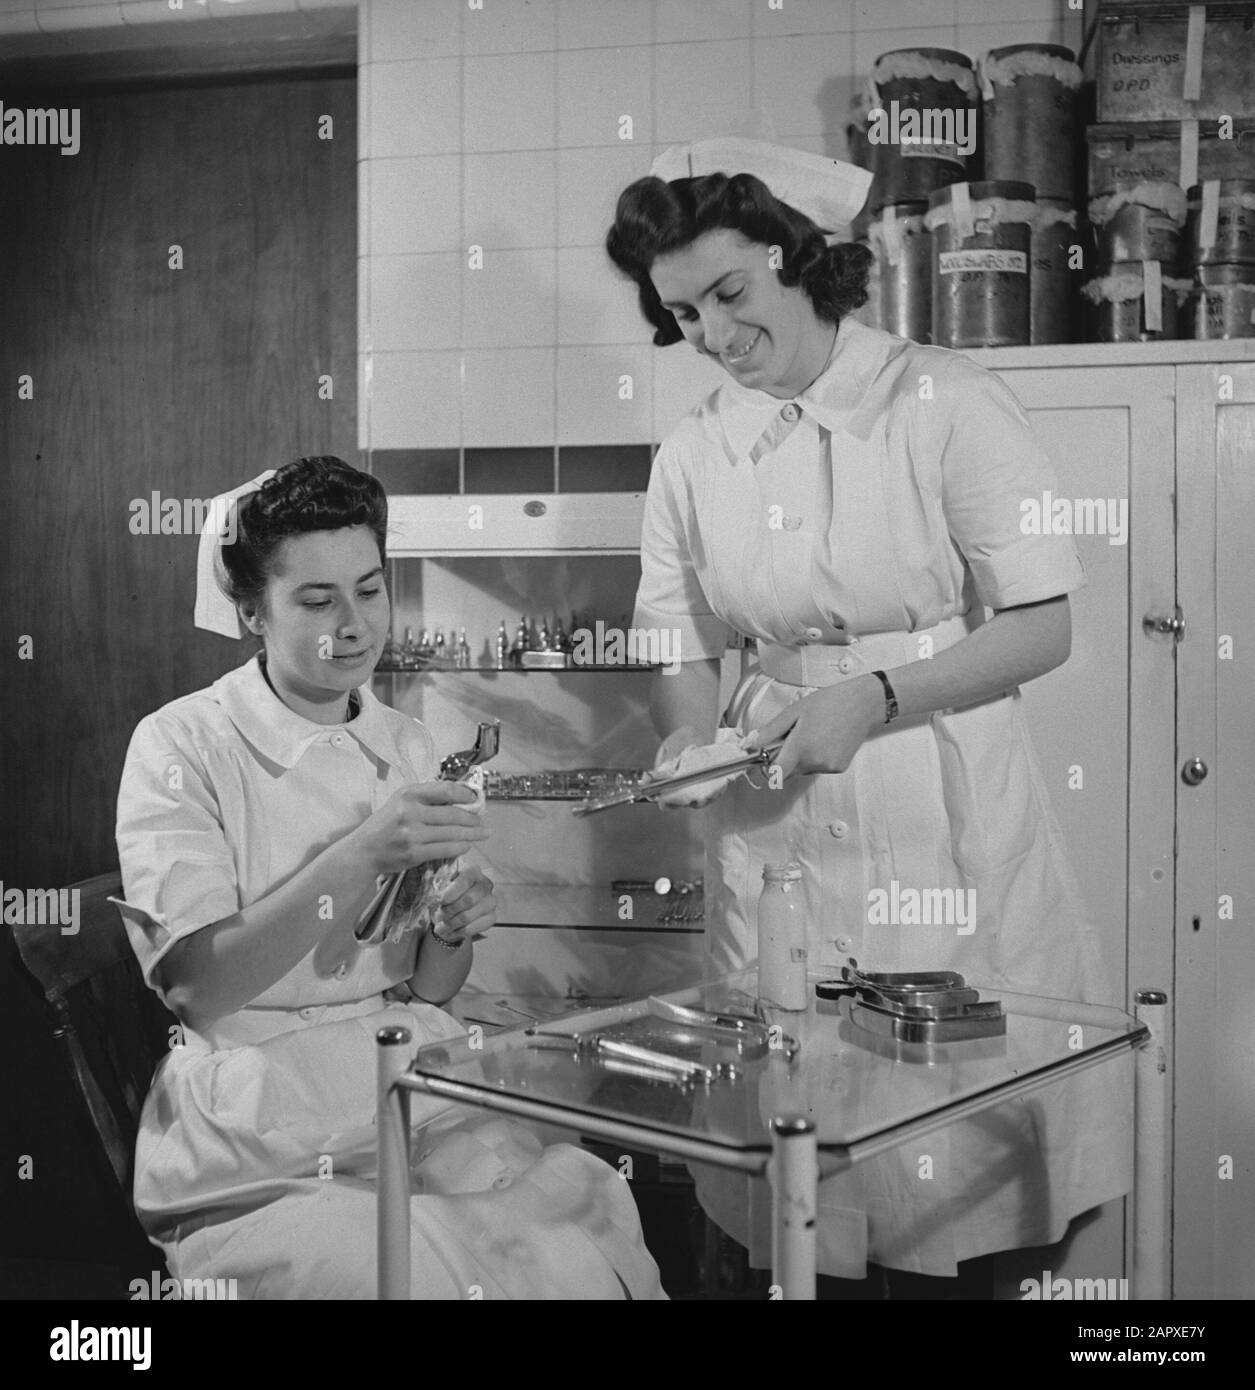 HIE [Olanda in Inghilterra]/Anefo serie London pulizia e disinfezione delle apparecchiature mediche Data: 1944 Ubicazione: Gran Bretagna Parole Chiave: Seconda guerra mondiale, infermieri, infermieri Foto Stock